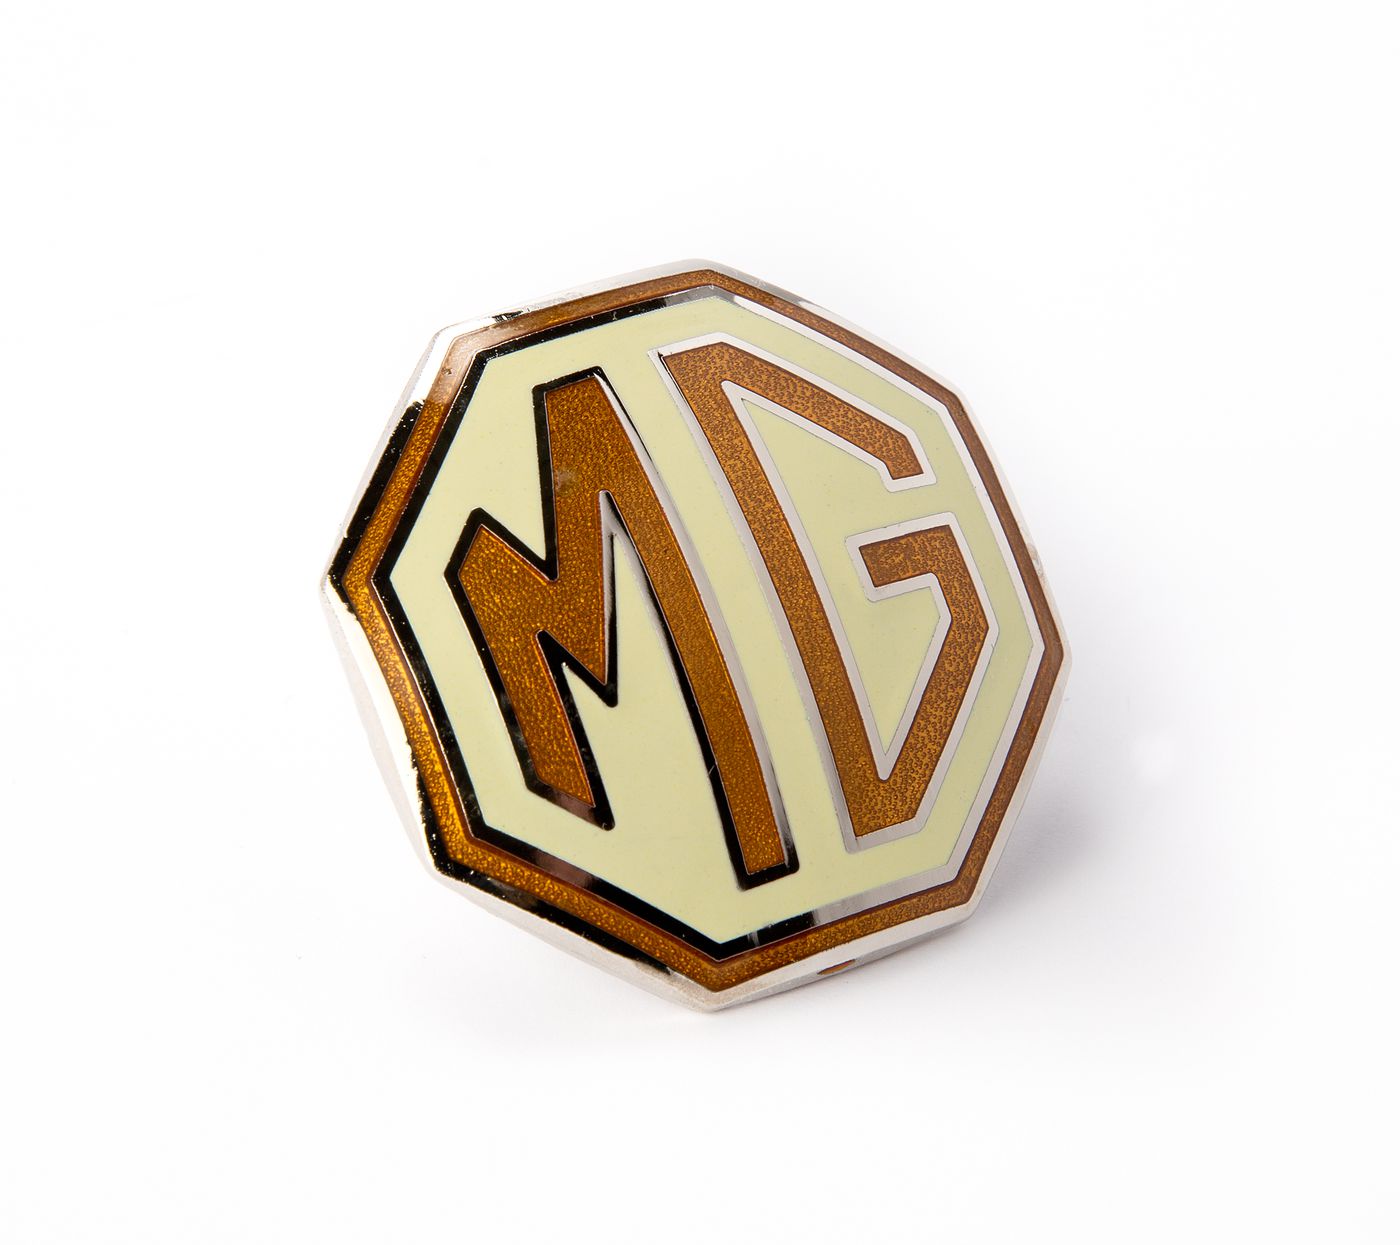 MG Emblem
MG badge
Emblème MG
Emblema MG